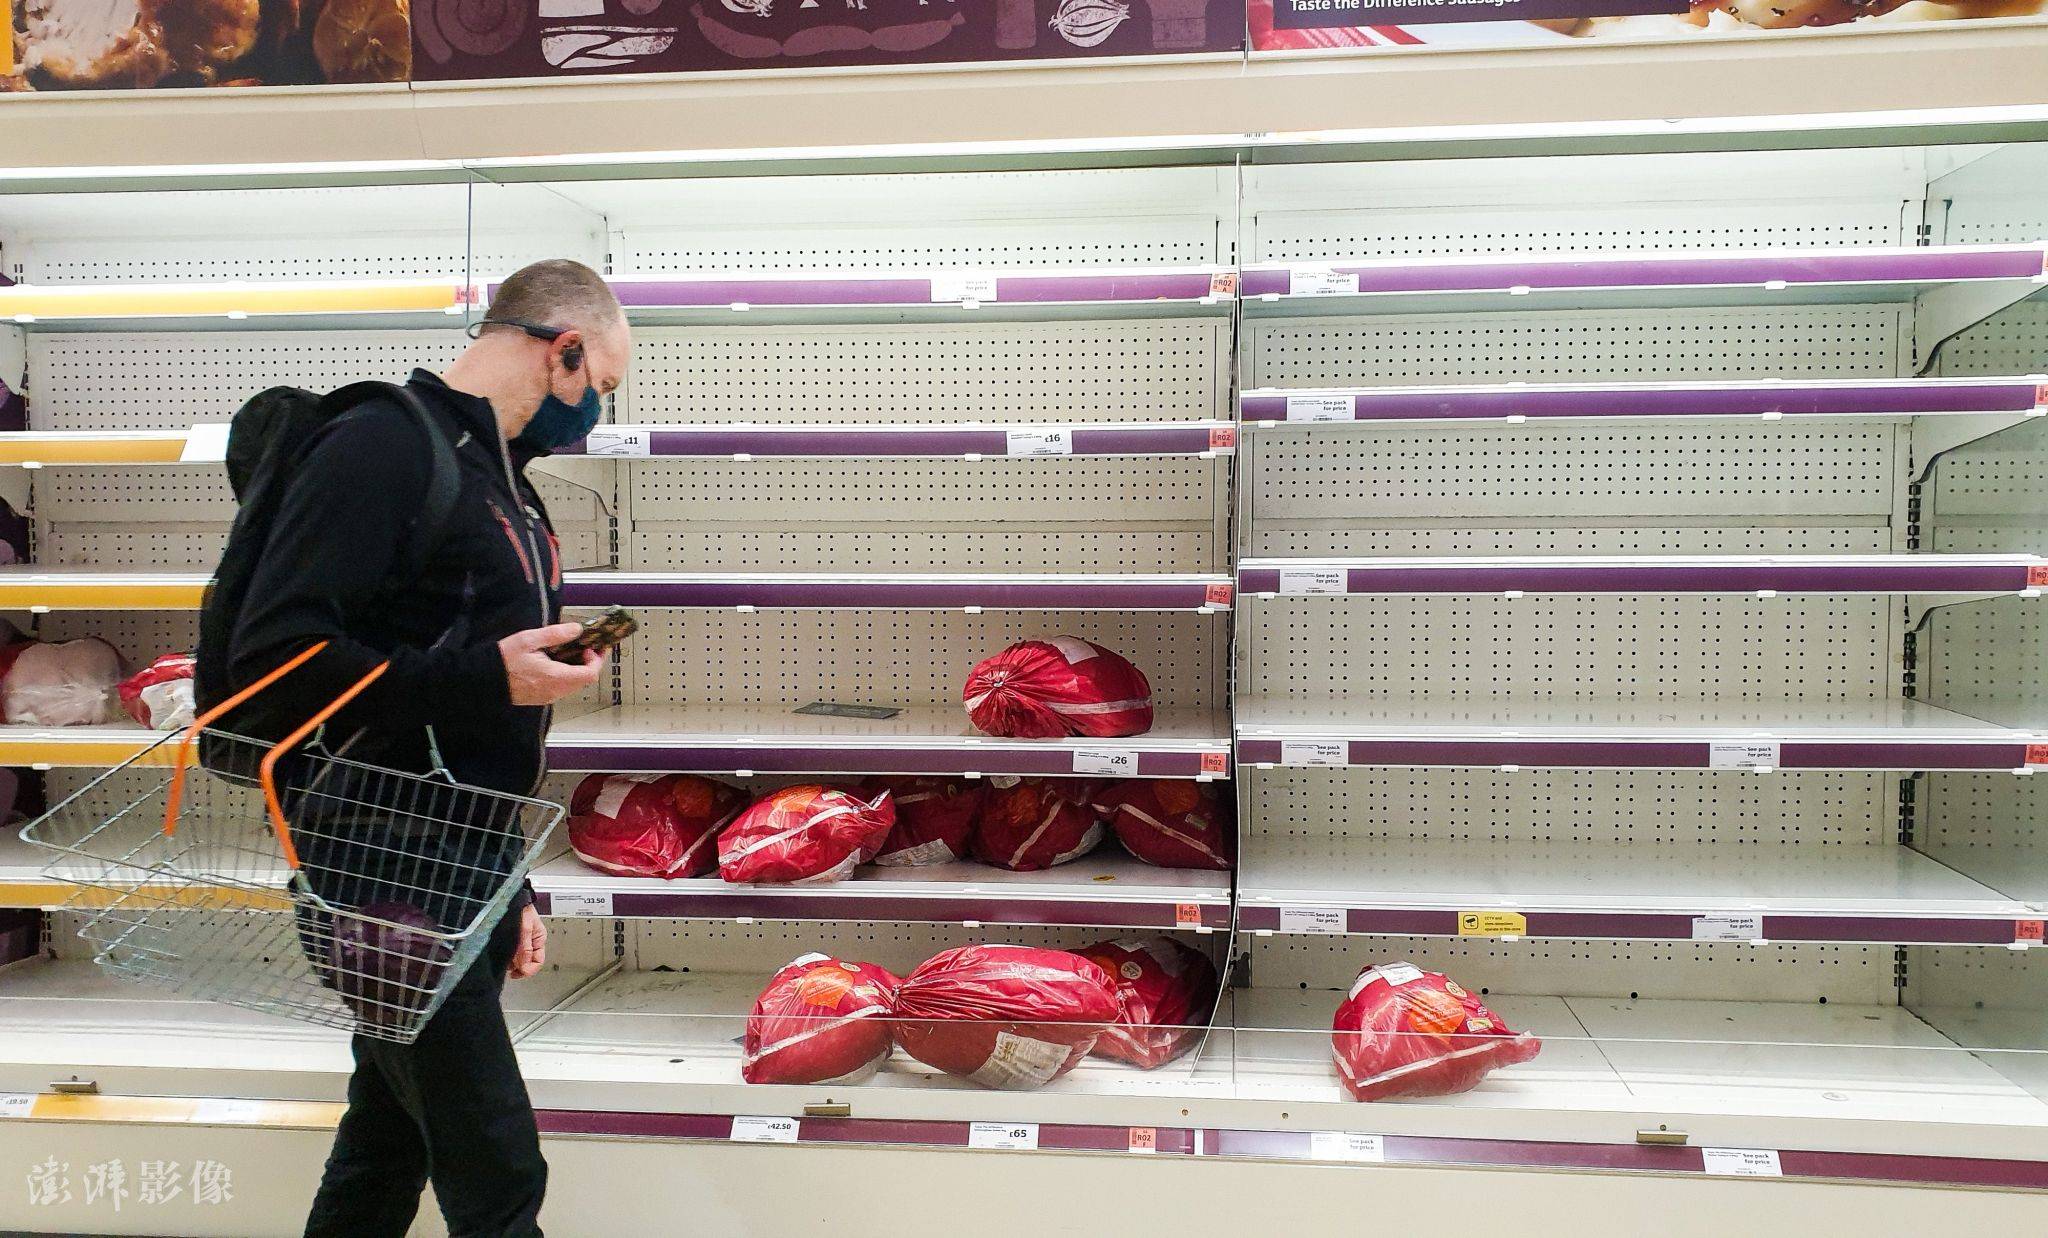 圣诞节前 伦敦市民采购抢光超市货架